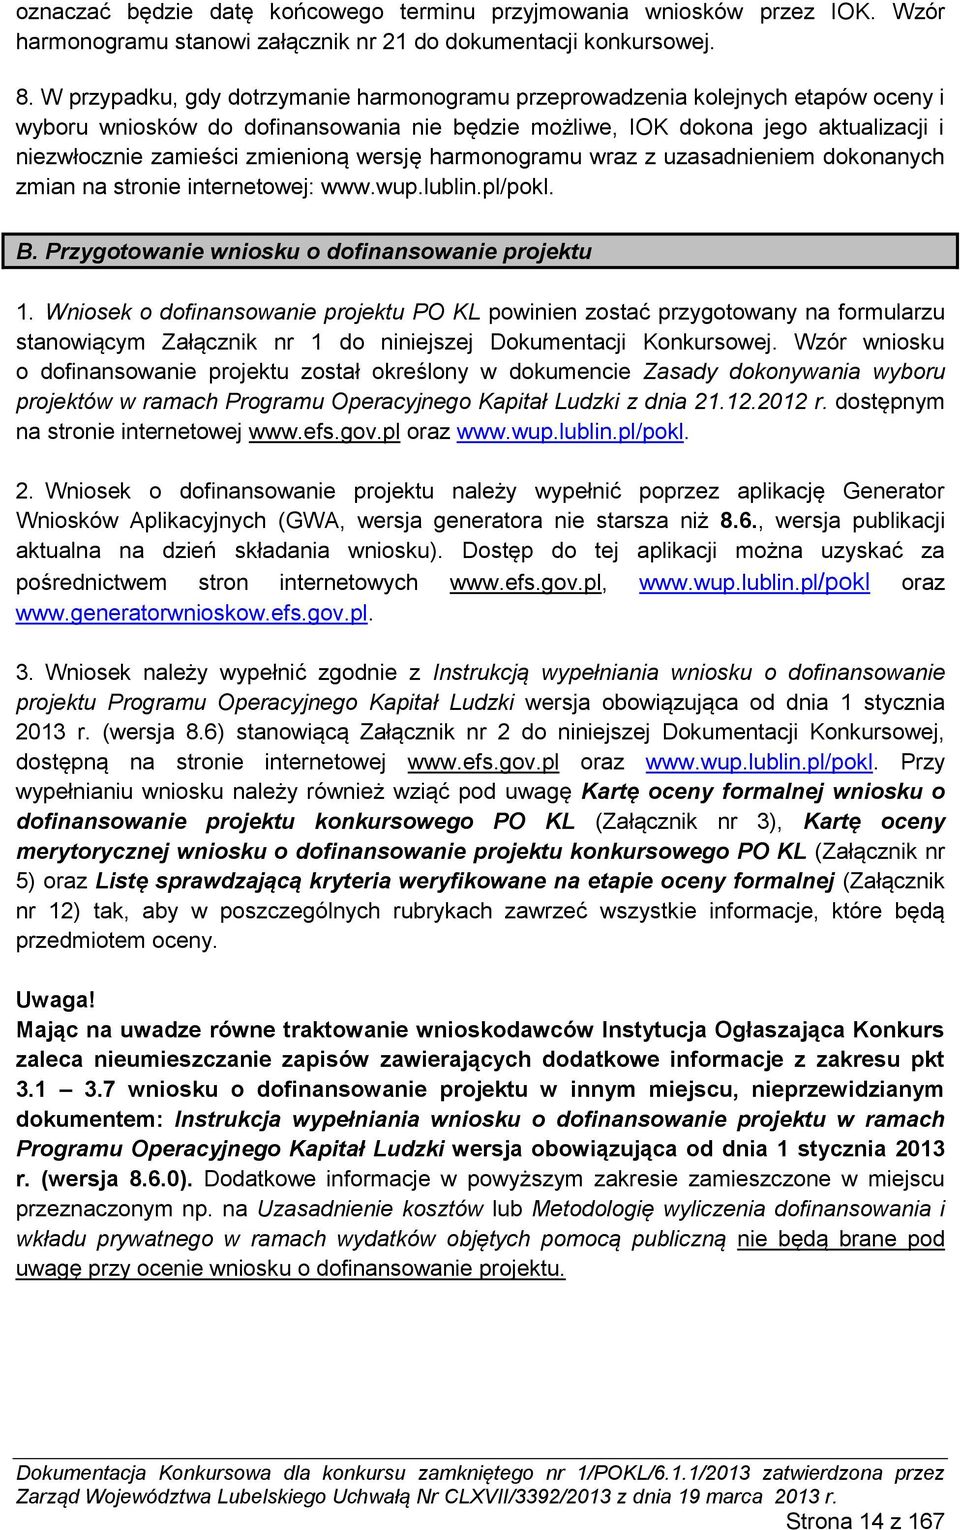 wersję harmonogramu wraz z uzasadnieniem dokonanych zmian na stronie internetowej: www.wup.lublin.pl/pokl. B. Przygotowanie wniosku o dofinansowanie projektu 1.